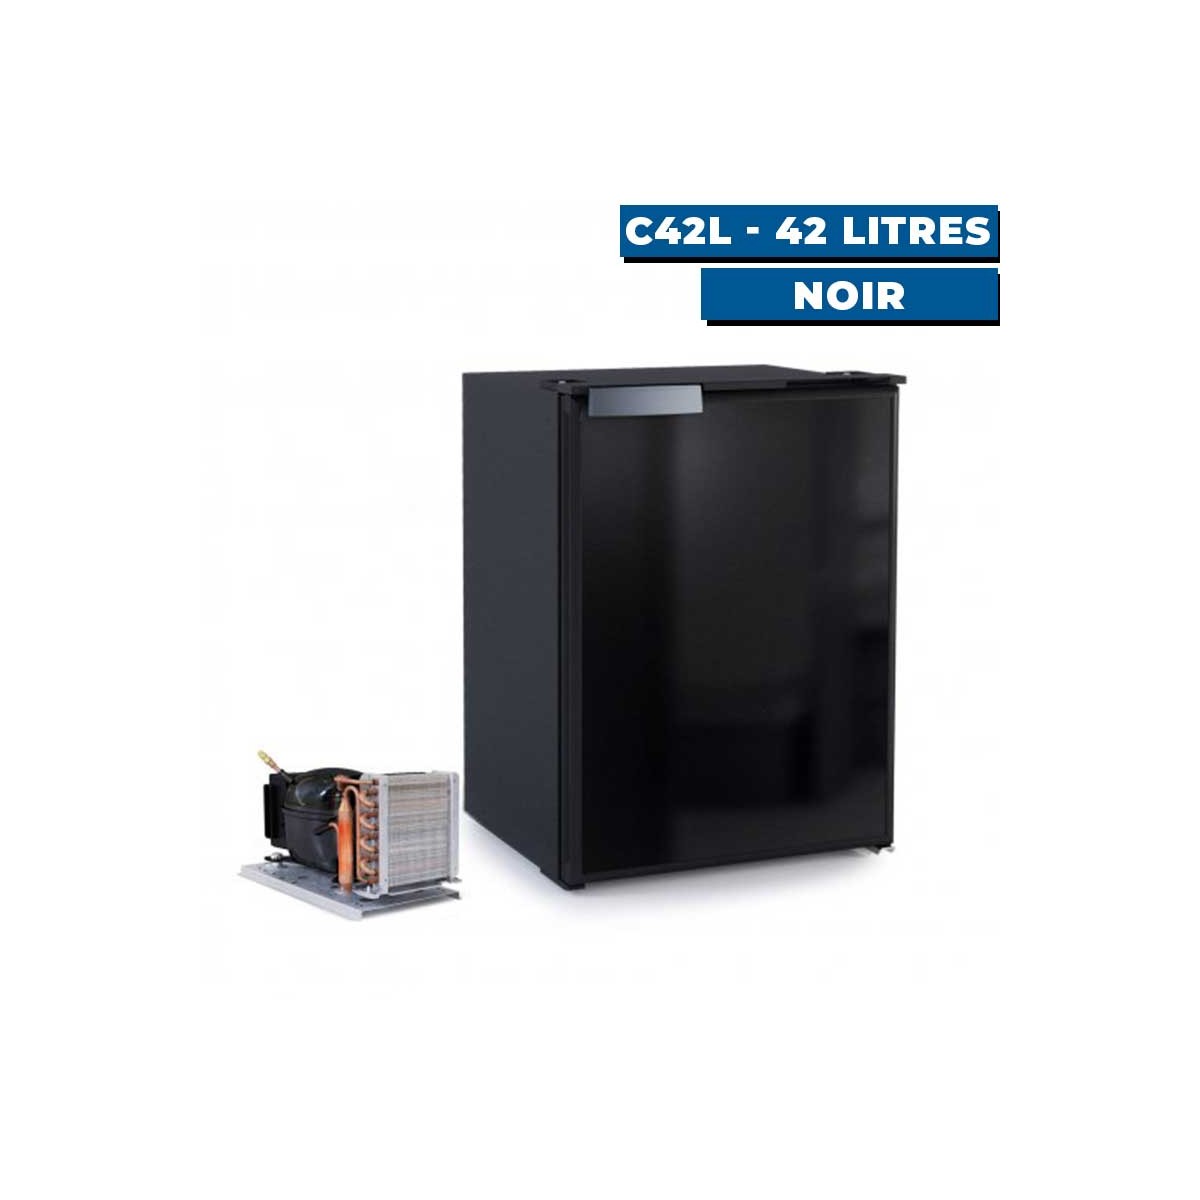 Réfrigérateur Seaclassic avec unité externe vitrifrigo C42L - noir